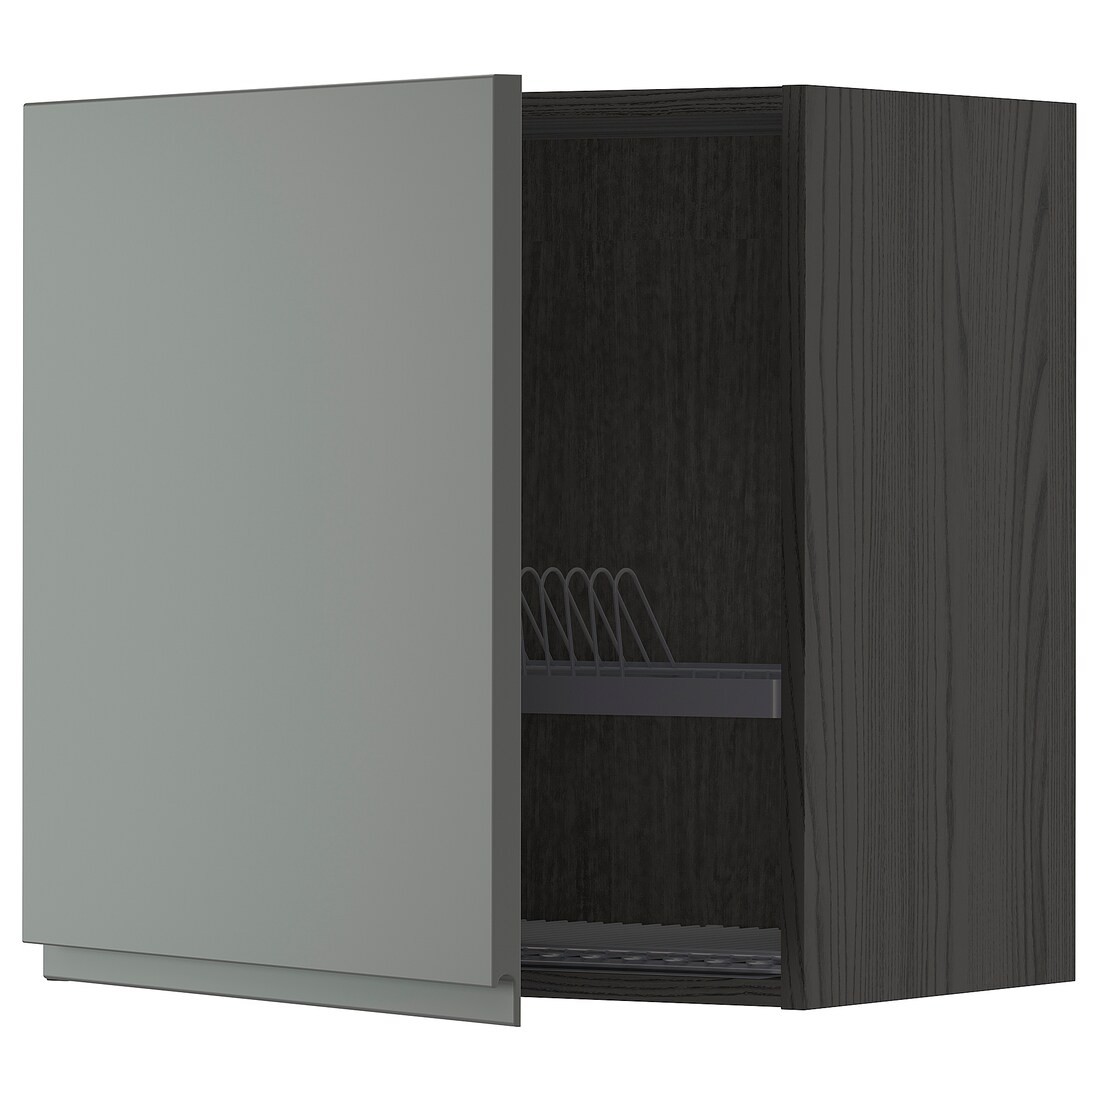 METOD МЕТОД Навесной шкаф с сушилкой, черный / Voxtorp темно-серый, 60x60 см